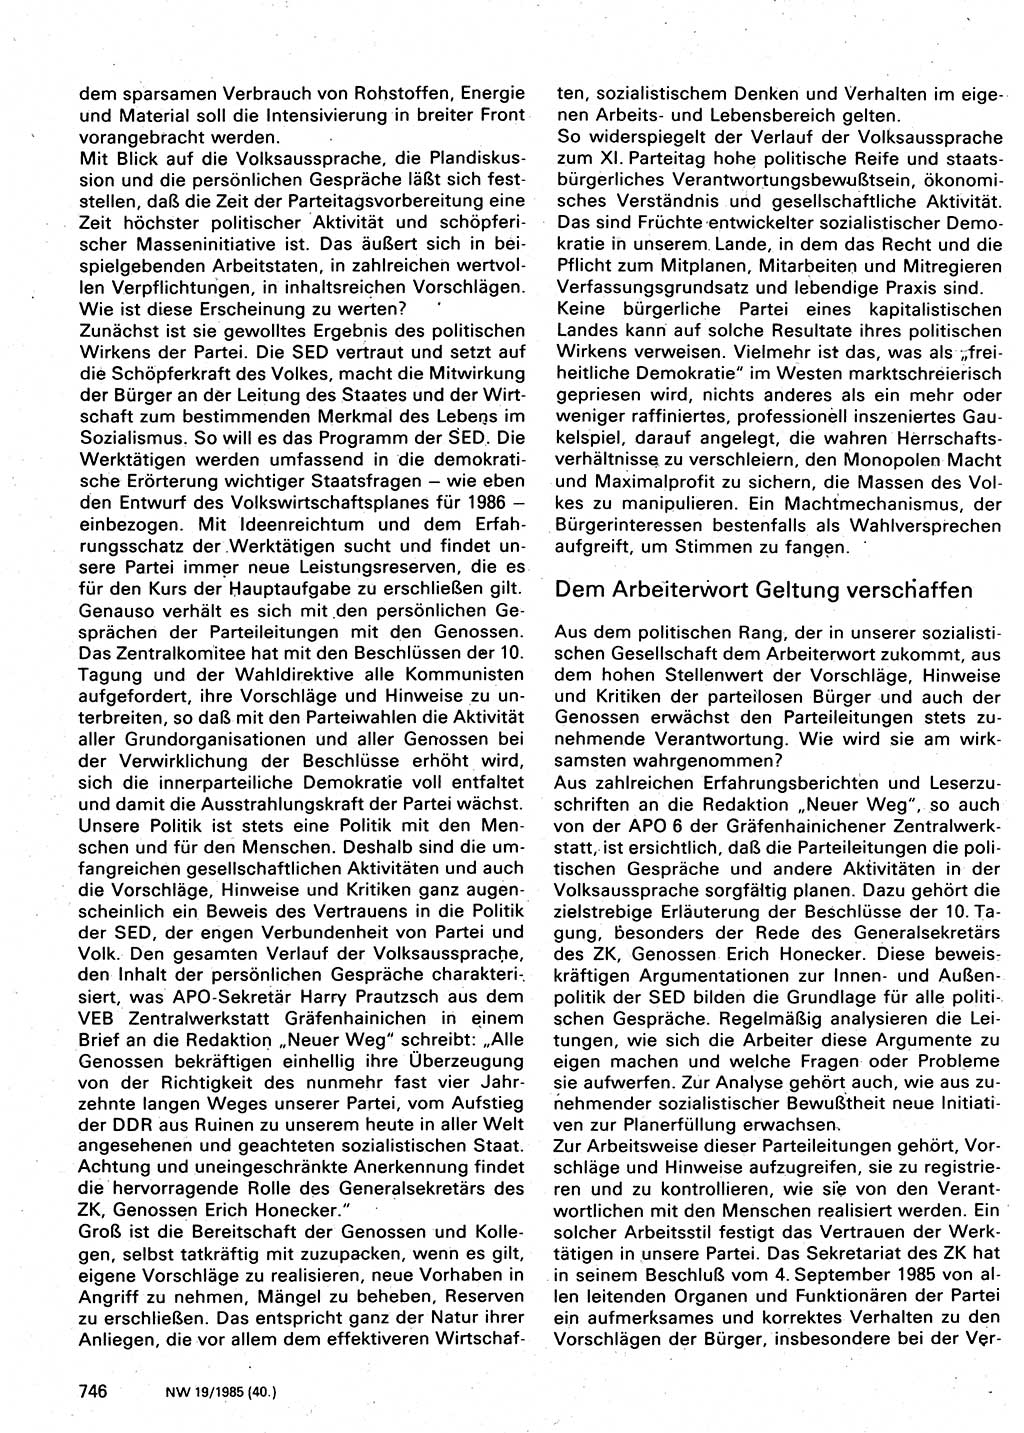 Neuer Weg (NW), Organ des Zentralkomitees (ZK) der SED (Sozialistische Einheitspartei Deutschlands) für Fragen des Parteilebens, 40. Jahrgang [Deutsche Demokratische Republik (DDR)] 1985, Seite 746 (NW ZK SED DDR 1985, S. 746)